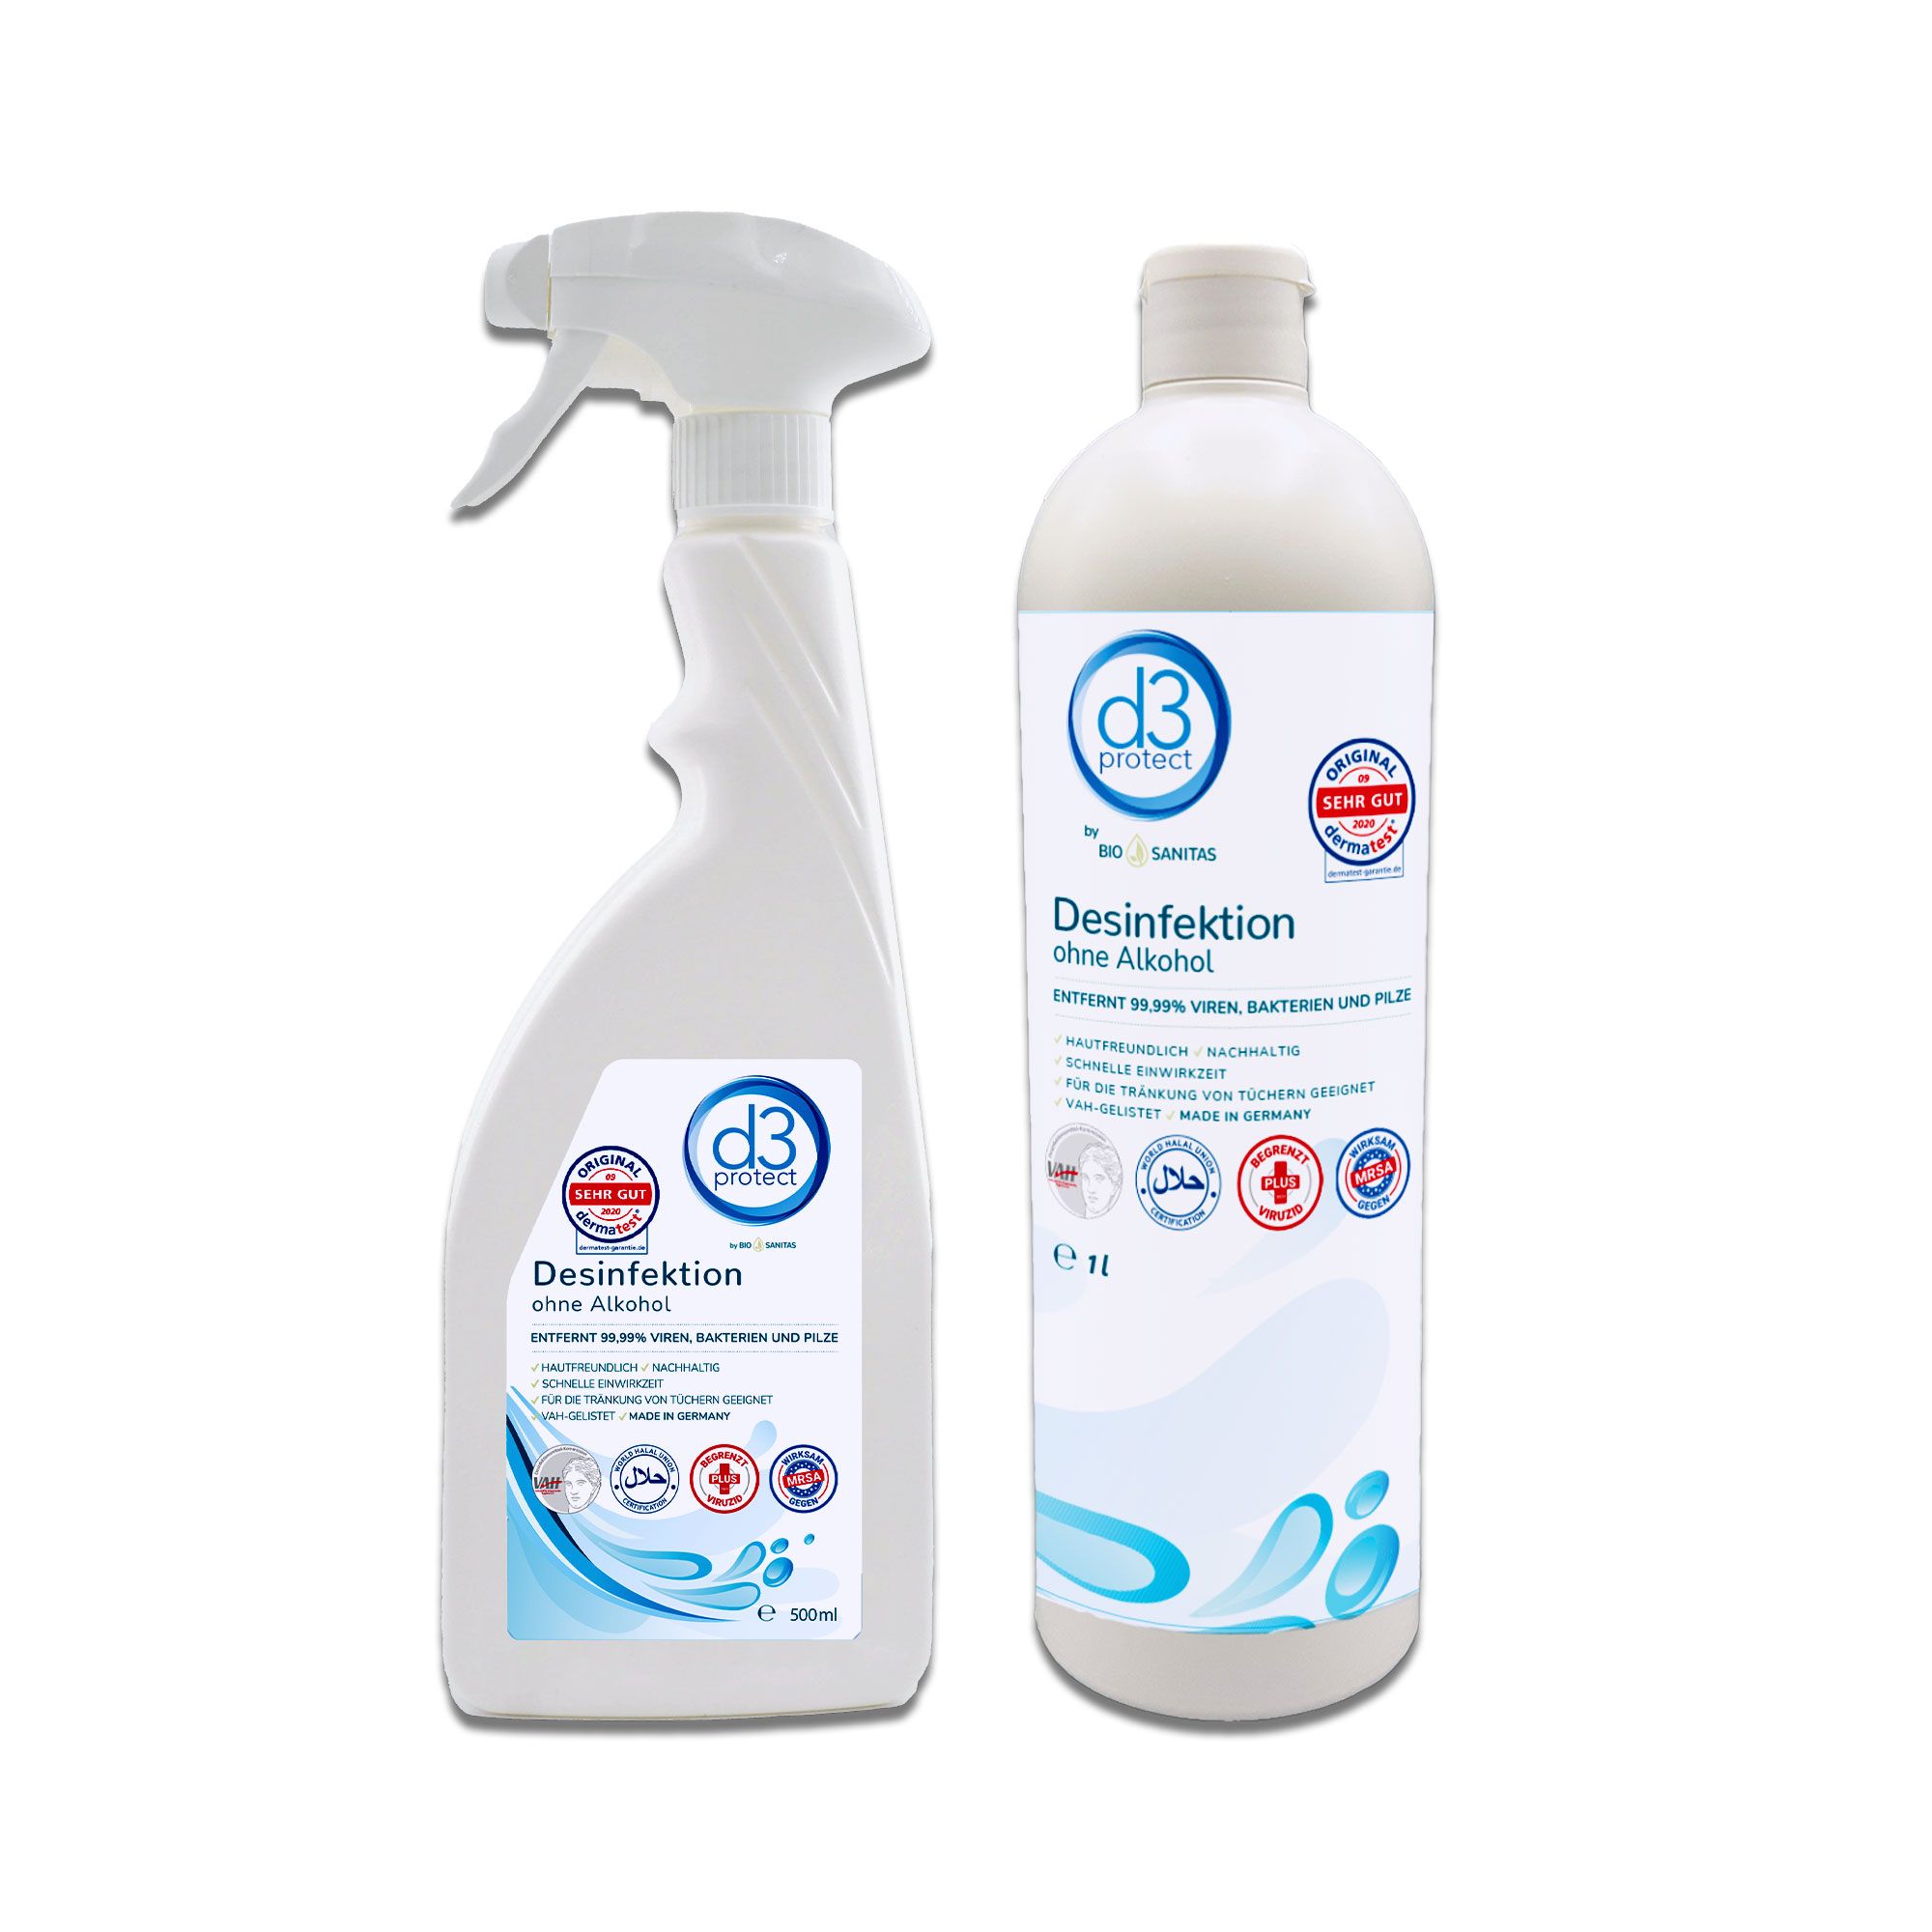 d3 protect® by Bio Sanitas Desinfektion ohne Alkohol 1l & 500ml